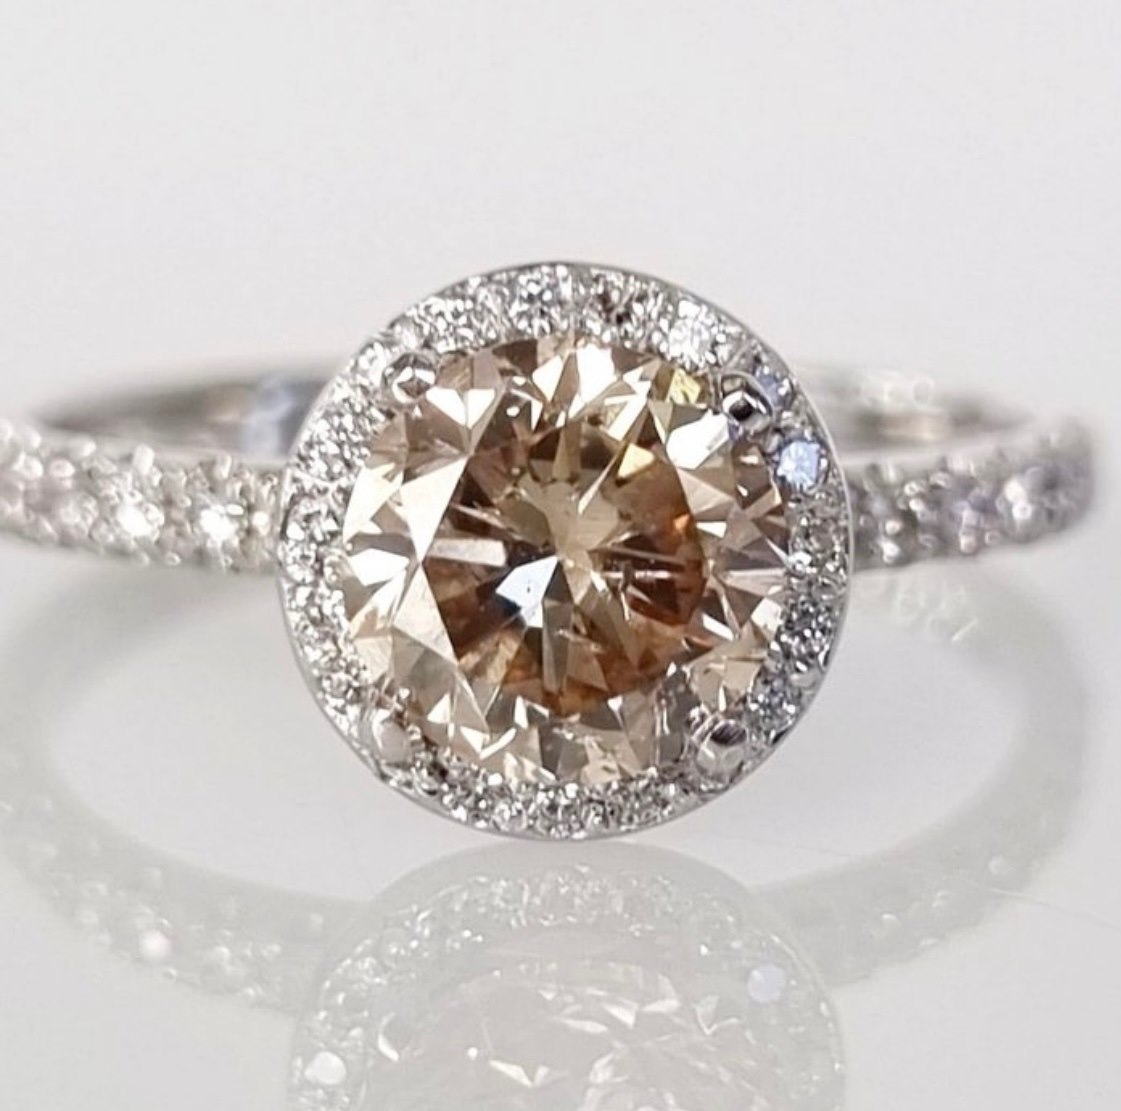 .. - Koktejlový prsten s centrálním přírodním diamantem 1,20 ct a 33 přírodními diamanty 0,21 ct, zlato 585/1000, značeno platnou puncovní značkou "labuť", hrubá hmotnost 2,10 g